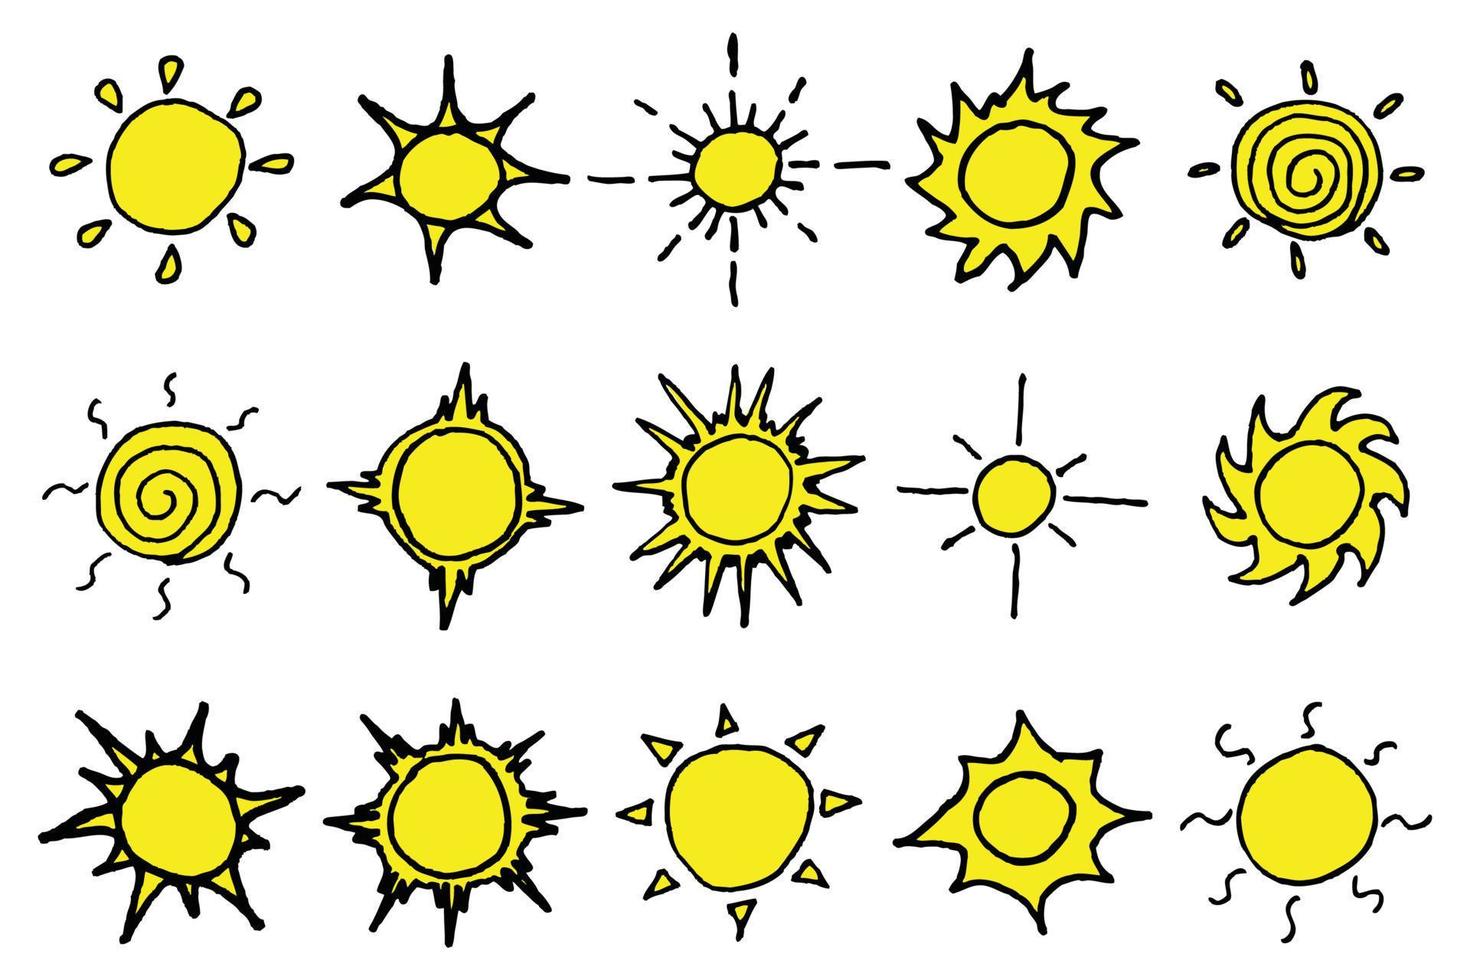 Sonnensymbol handgezeichnetes Farbdoodle vektor